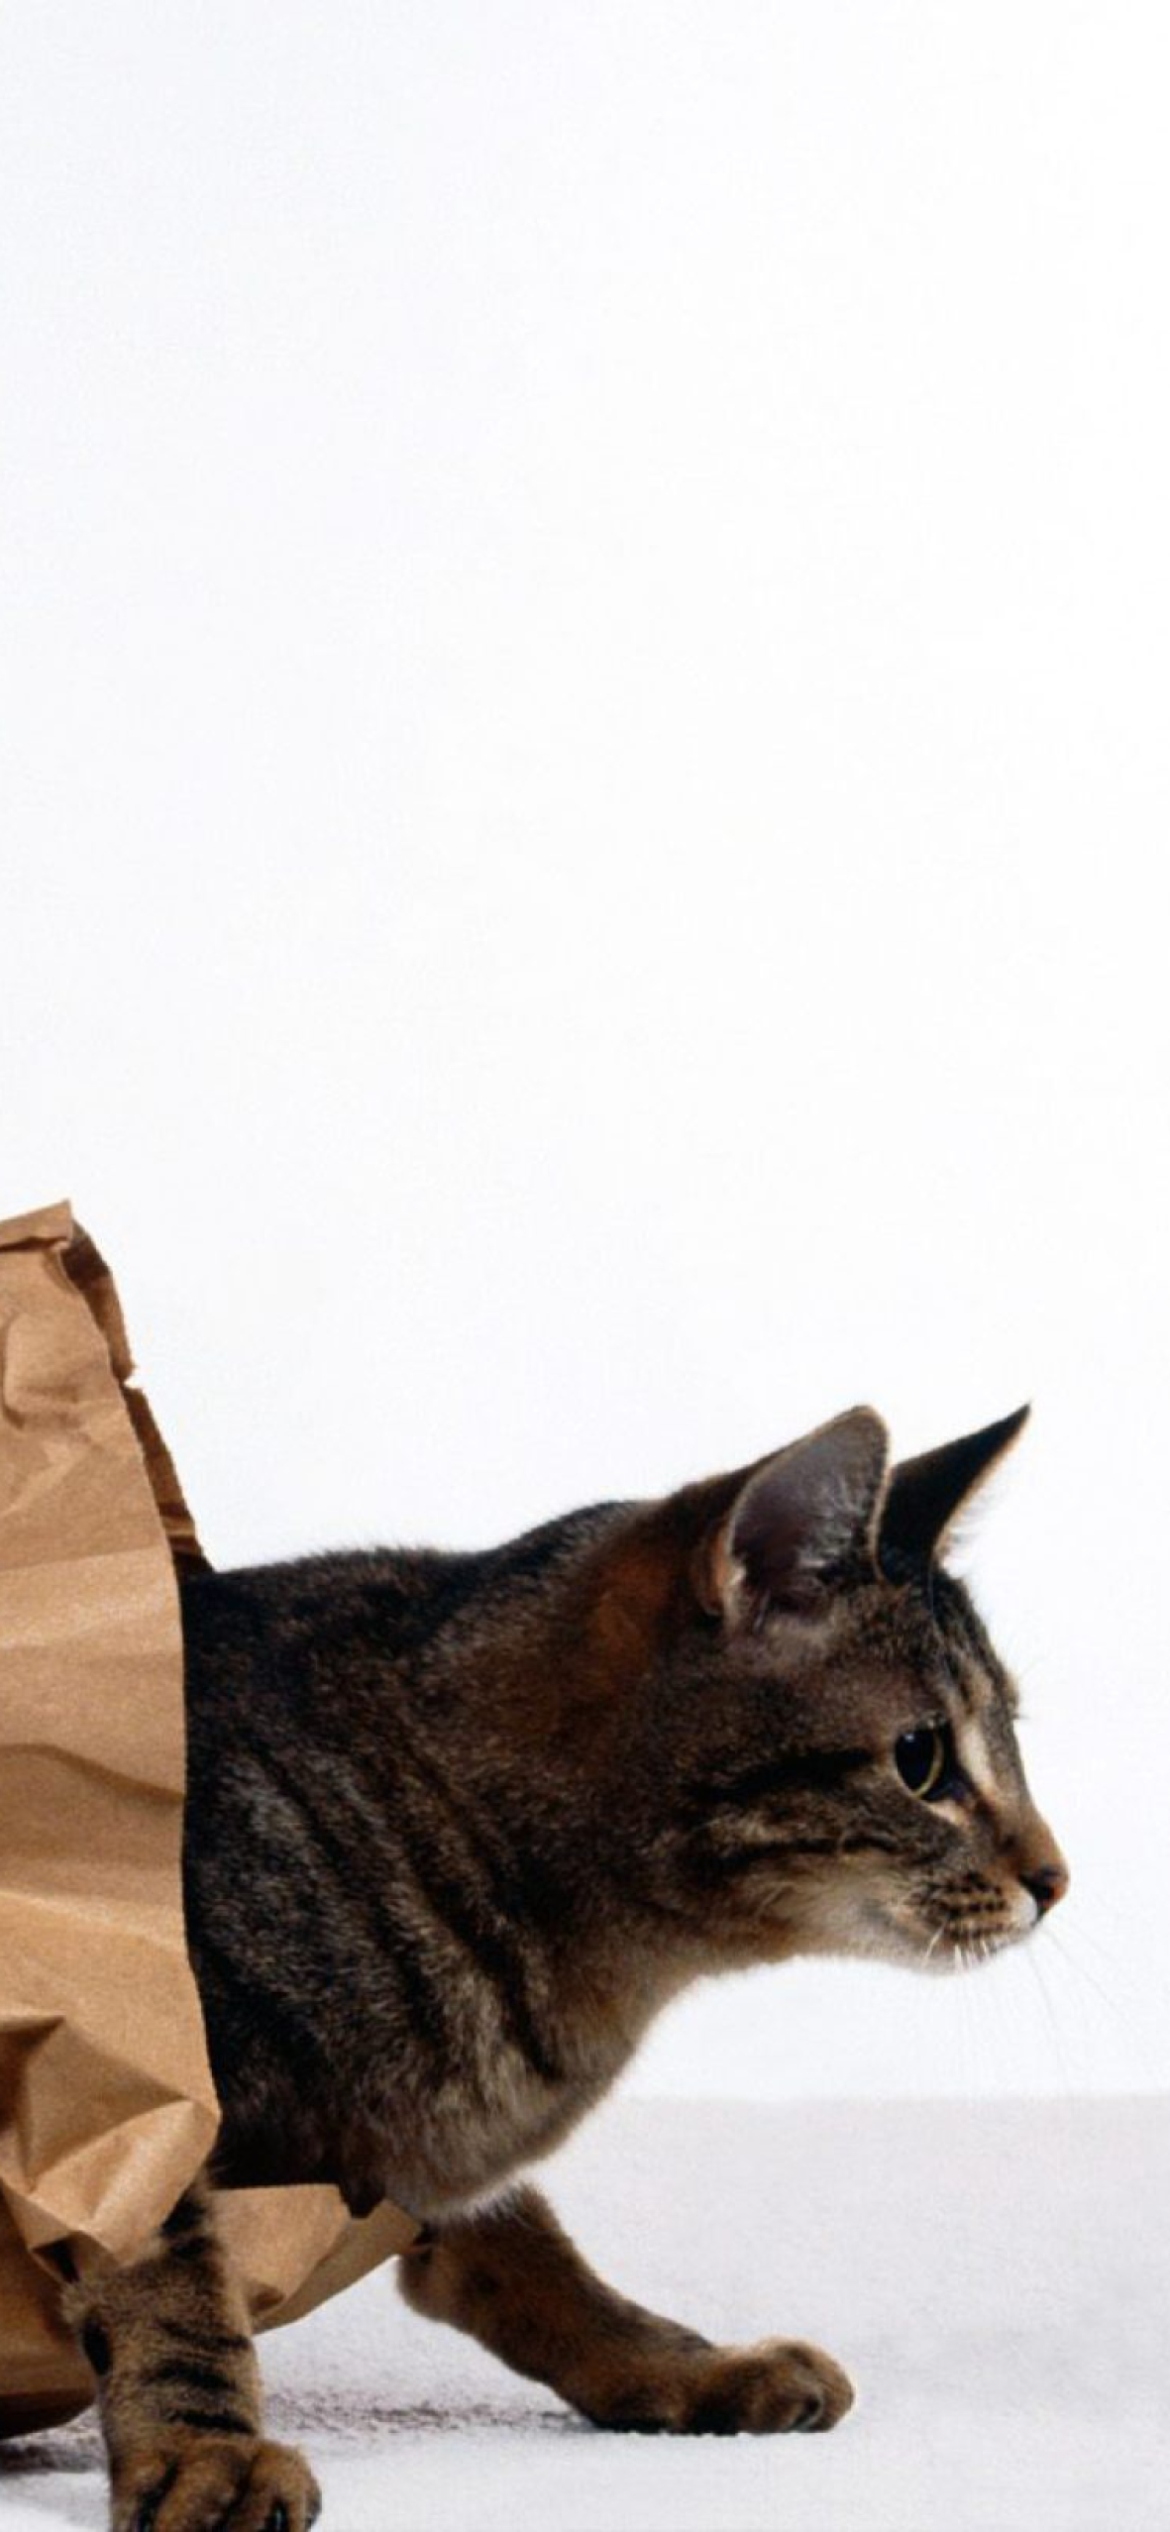 Cat In Paperbag wallpaper 1170x2532